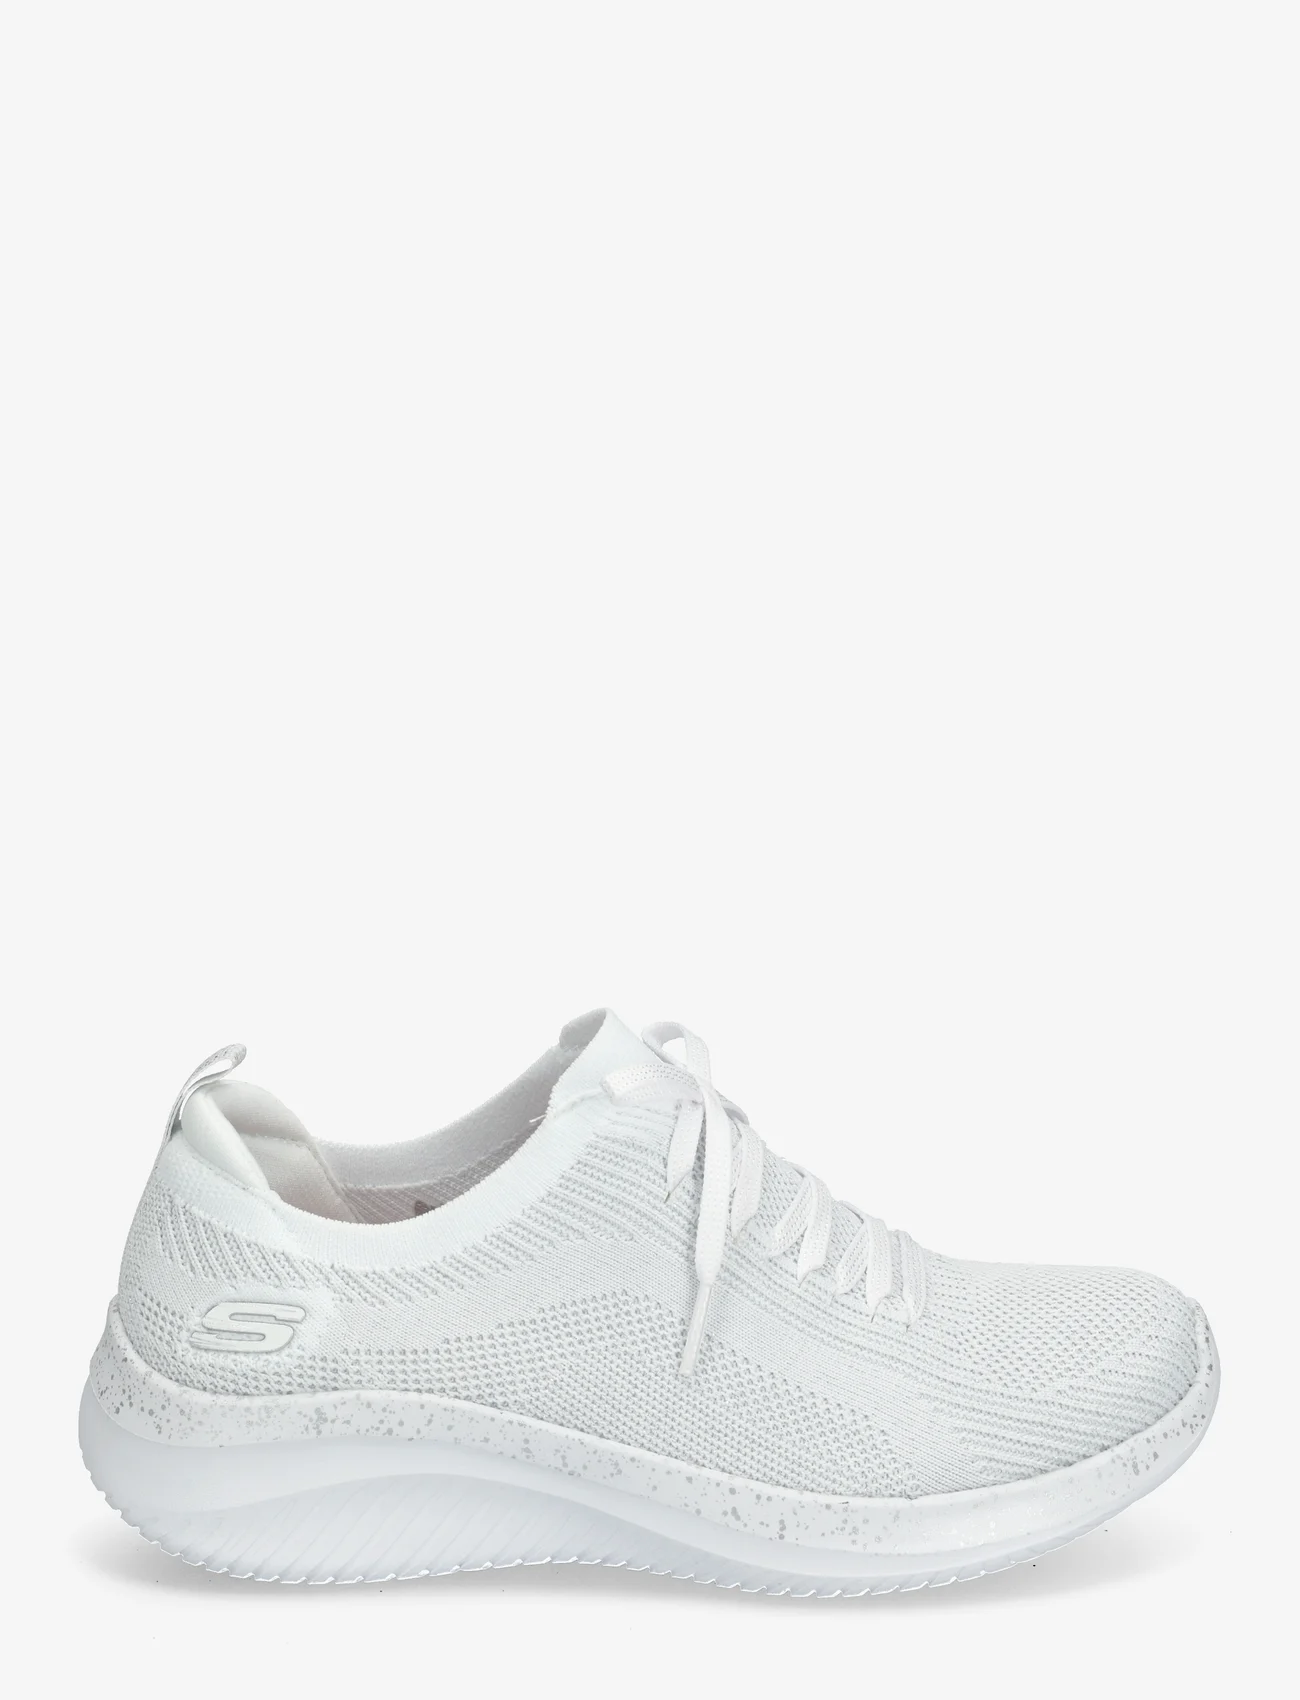 Skechers - Womens Ultra Flex 3.0 - Lets Dance - sneakers med lavt skaft - wsl white silver - 1